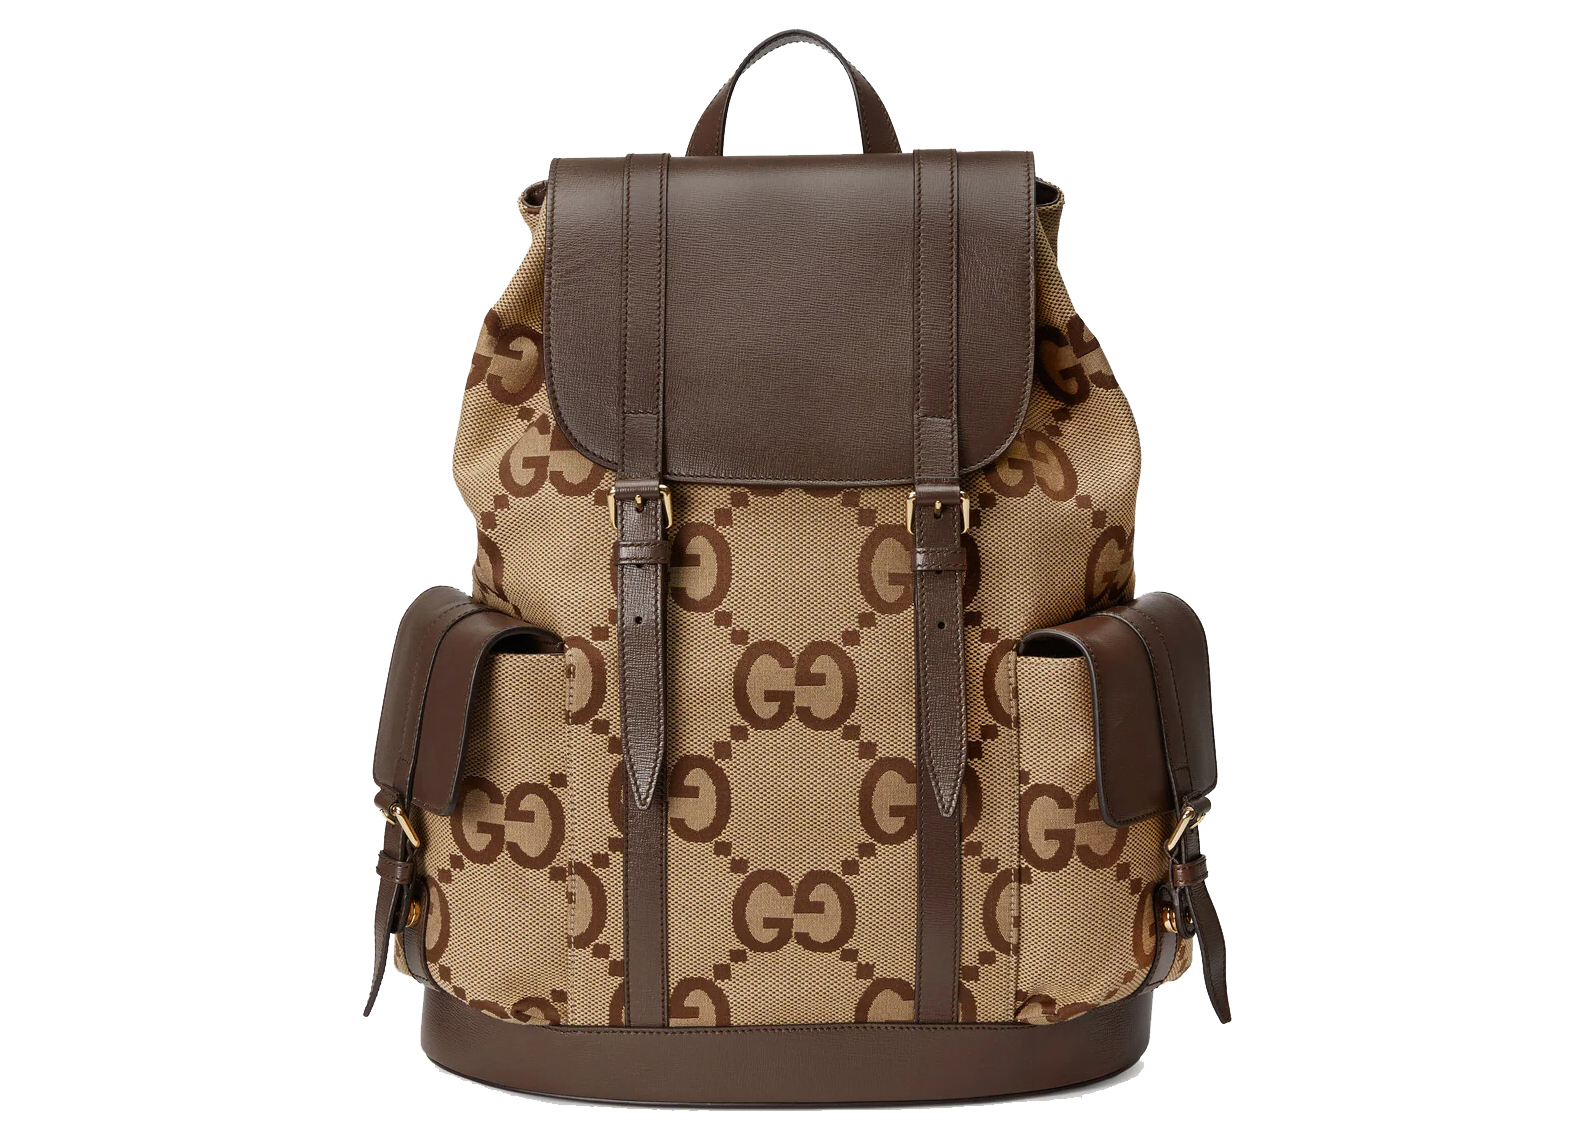 Gucci Ophidia GG small backpack | Zaino, Borsa gucci, Borse gucci